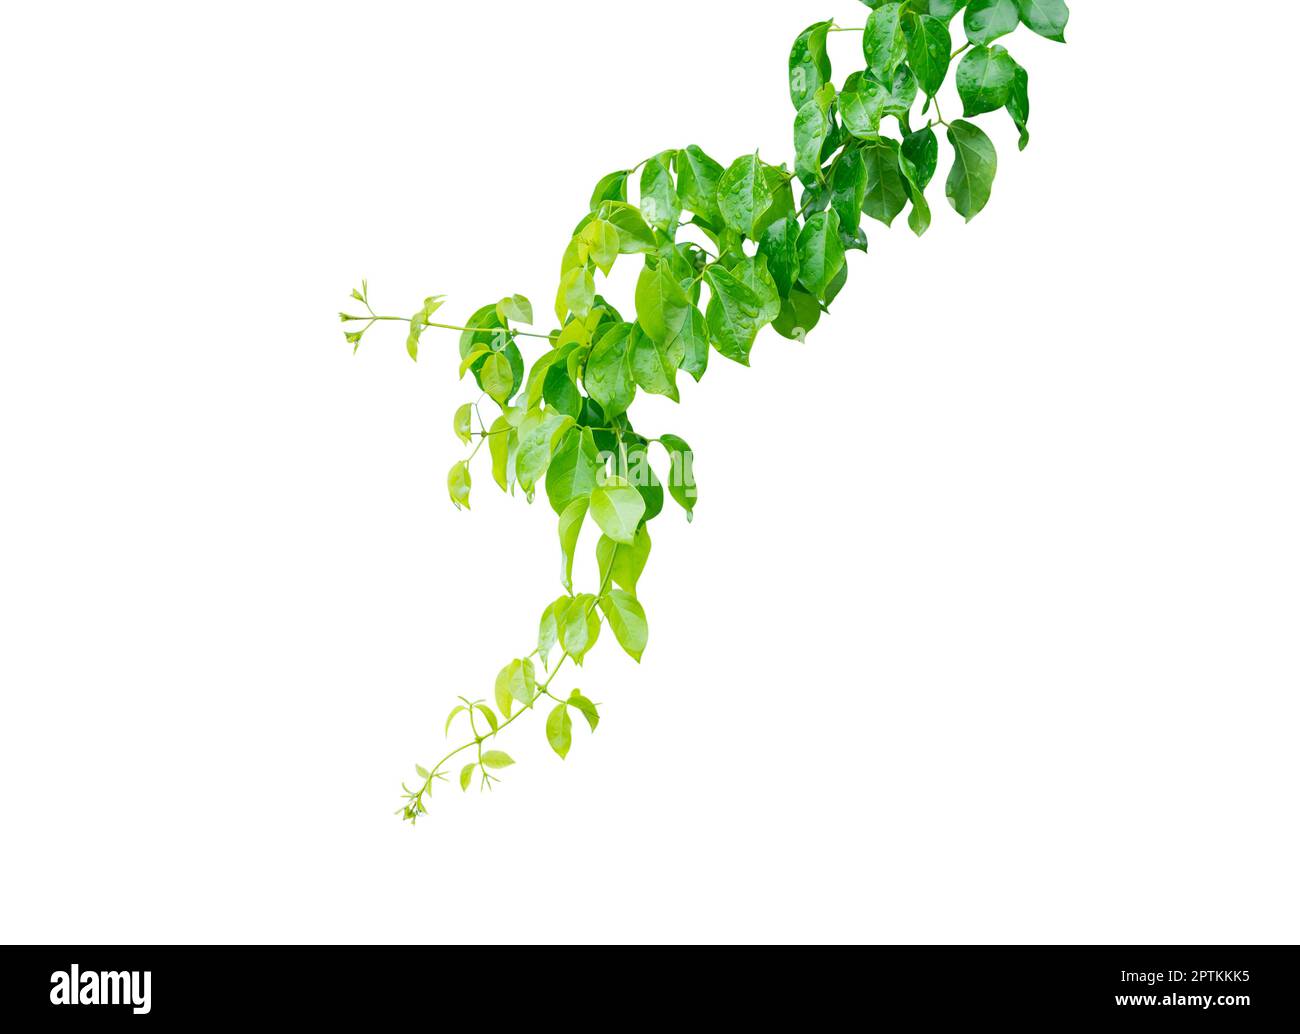 Pianta d'edera con foglie verdi a forma di cuore, isolata su fondo bianco con percorso di ritaglio. Foto Stock